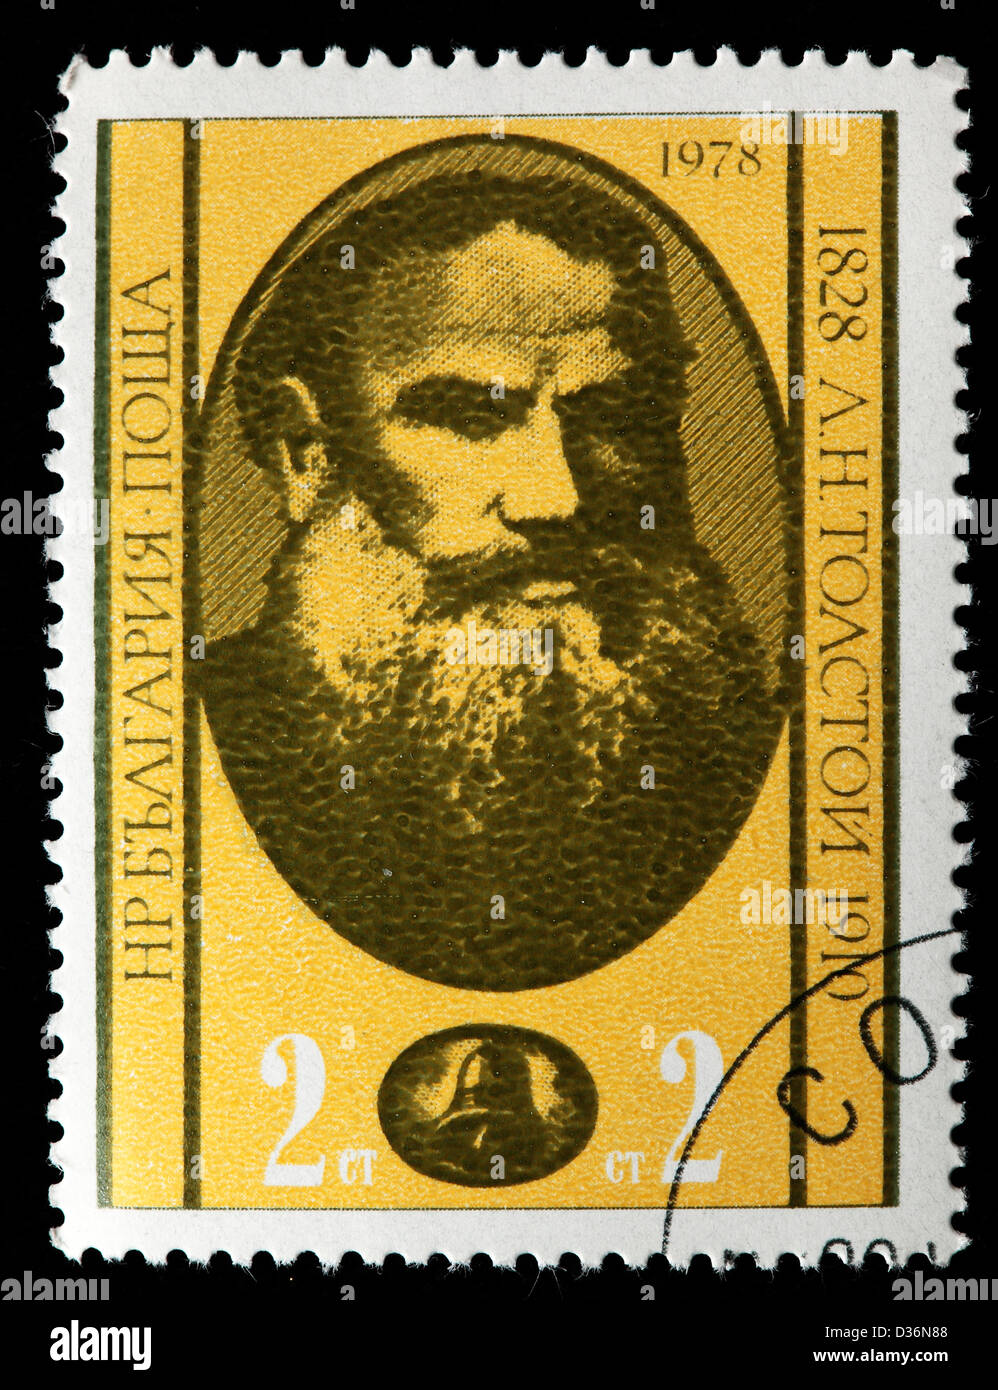 León Tolstoi, sello, Bulgaria, 1978 Foto de stock